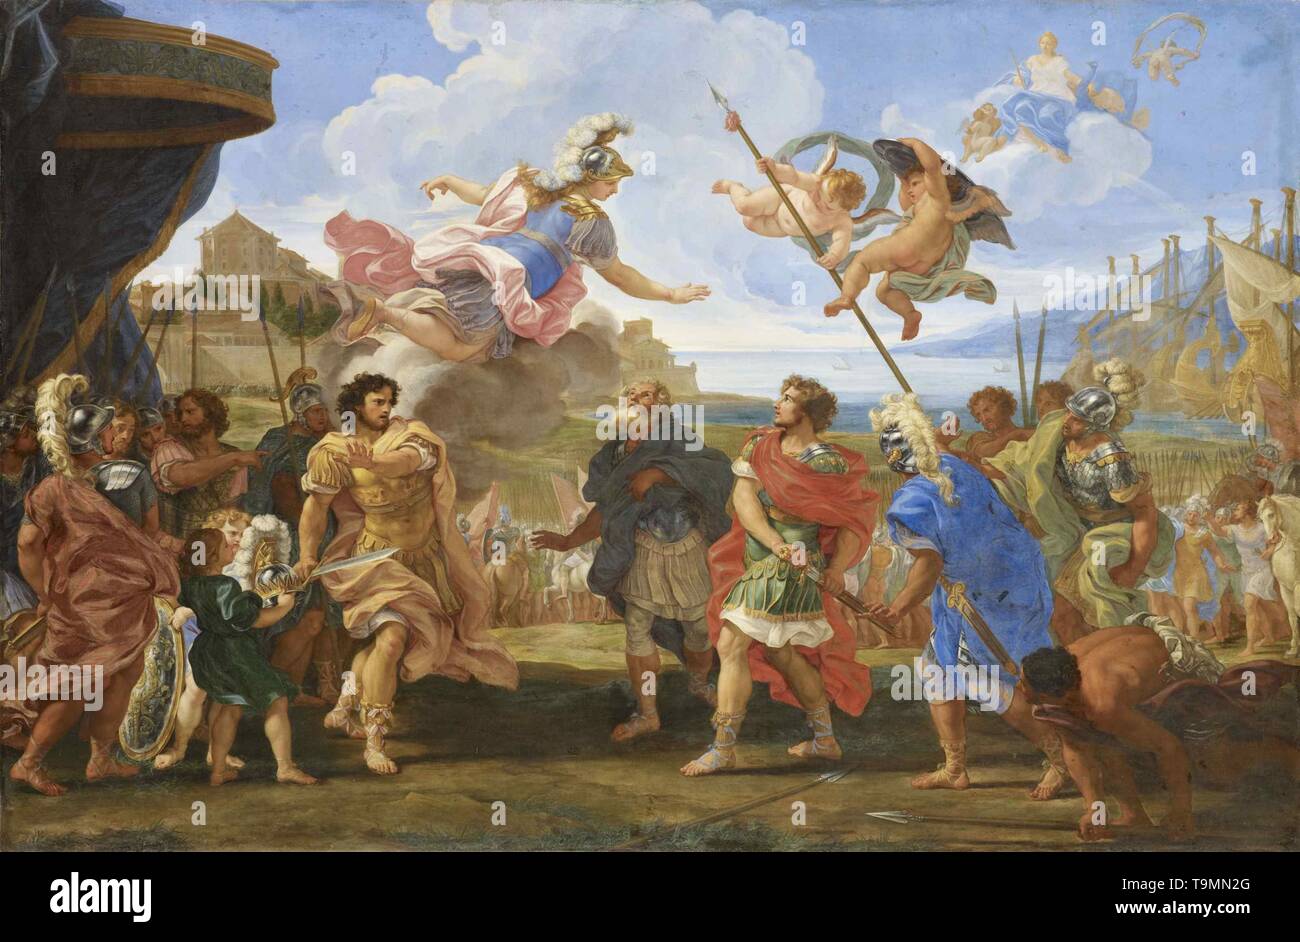 Der Streit zwischen Agamemnon und Achilles. Museum: Musée de l'Oise, Beauvais. Autor: Giovanni Battista Gaulli (Il Baciccio). Stockfoto